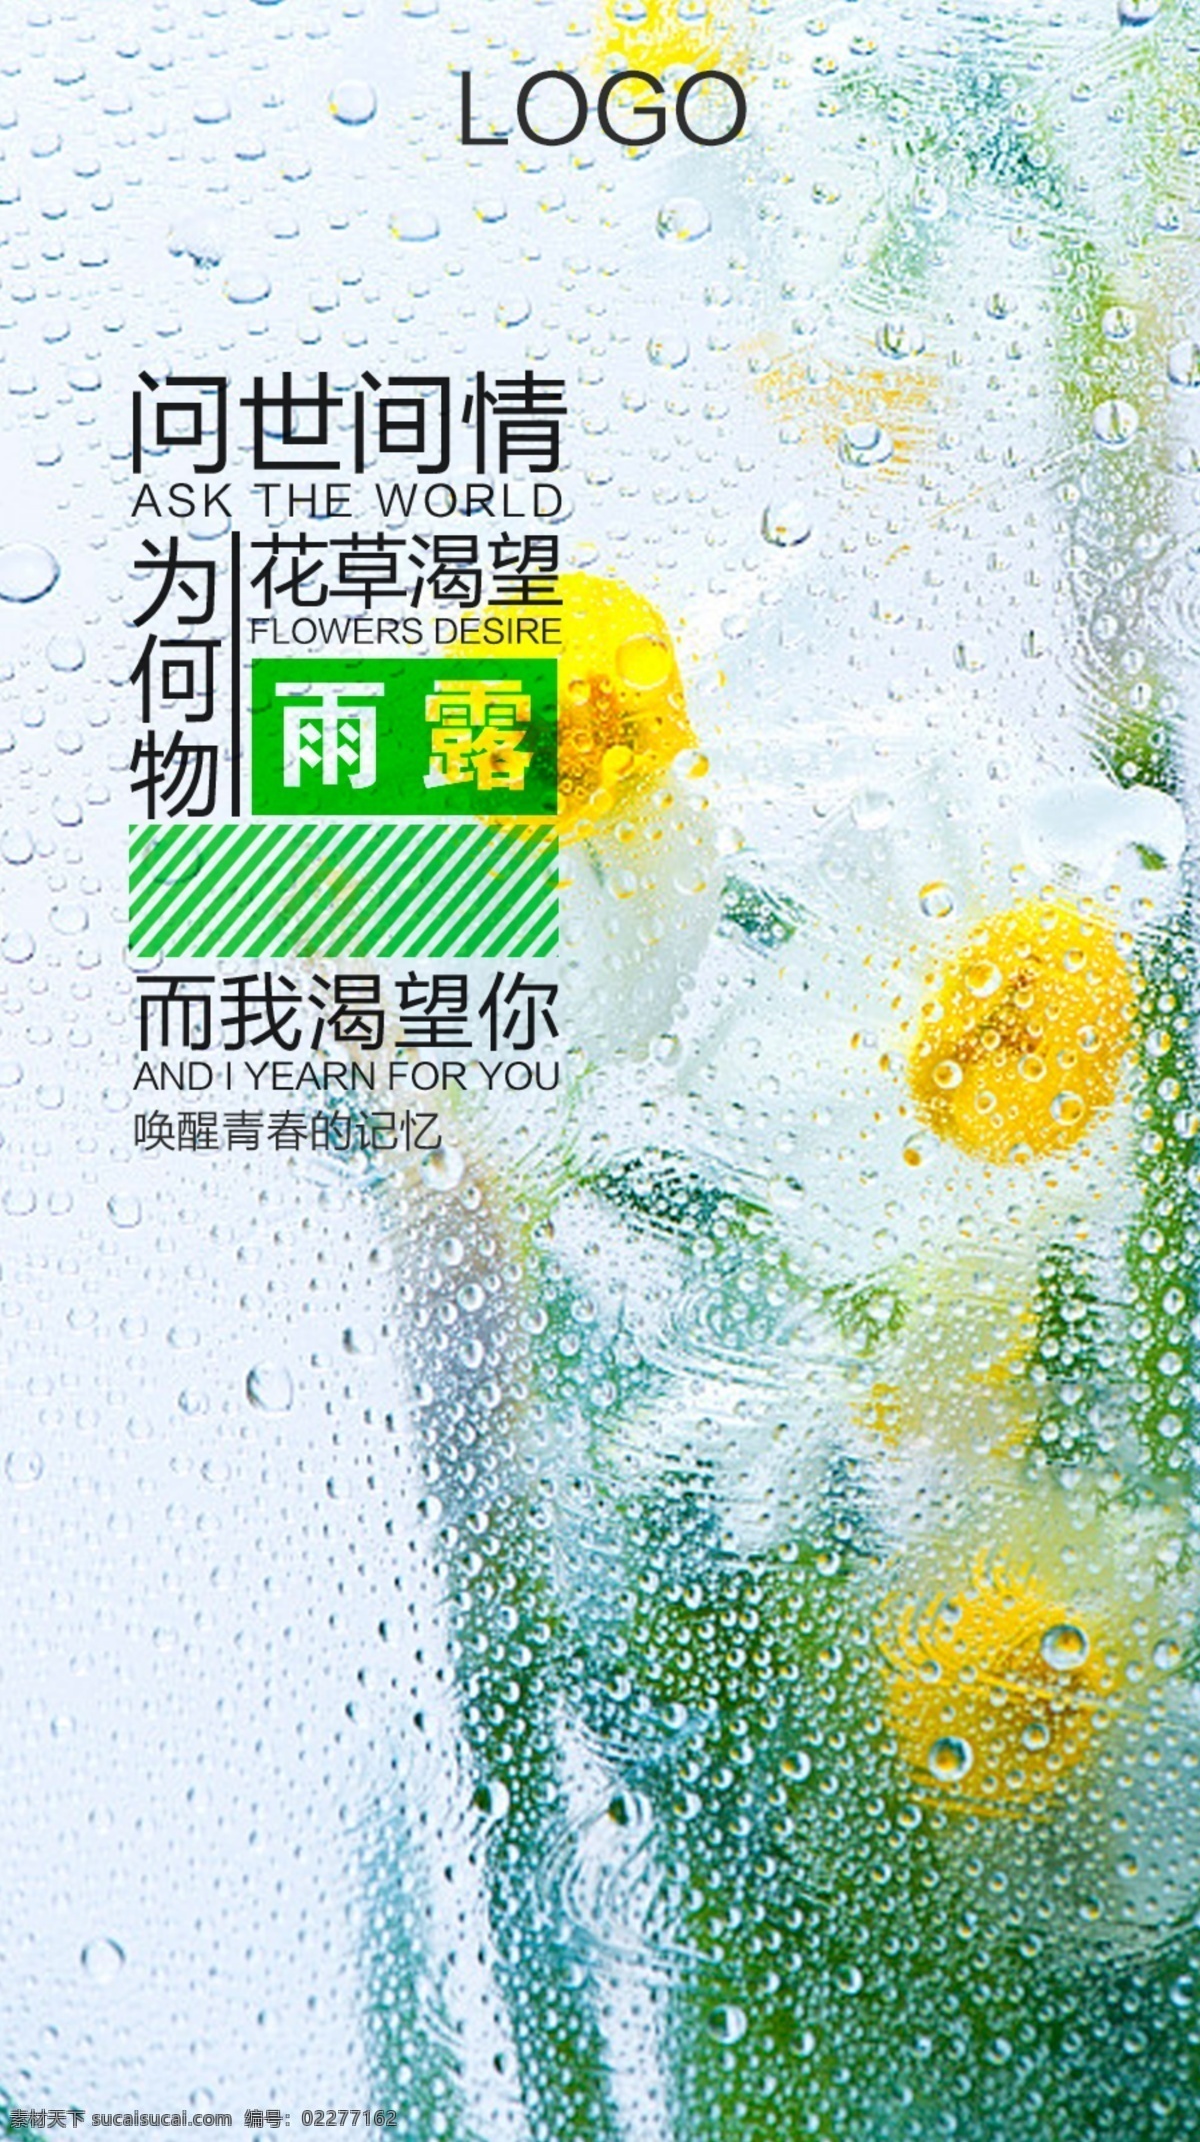 白色 绿色 清新 花朵 产品 海报 源文件 水雾 植物 绿色植物 问世 间 情 为何 物 花 春季产品海报